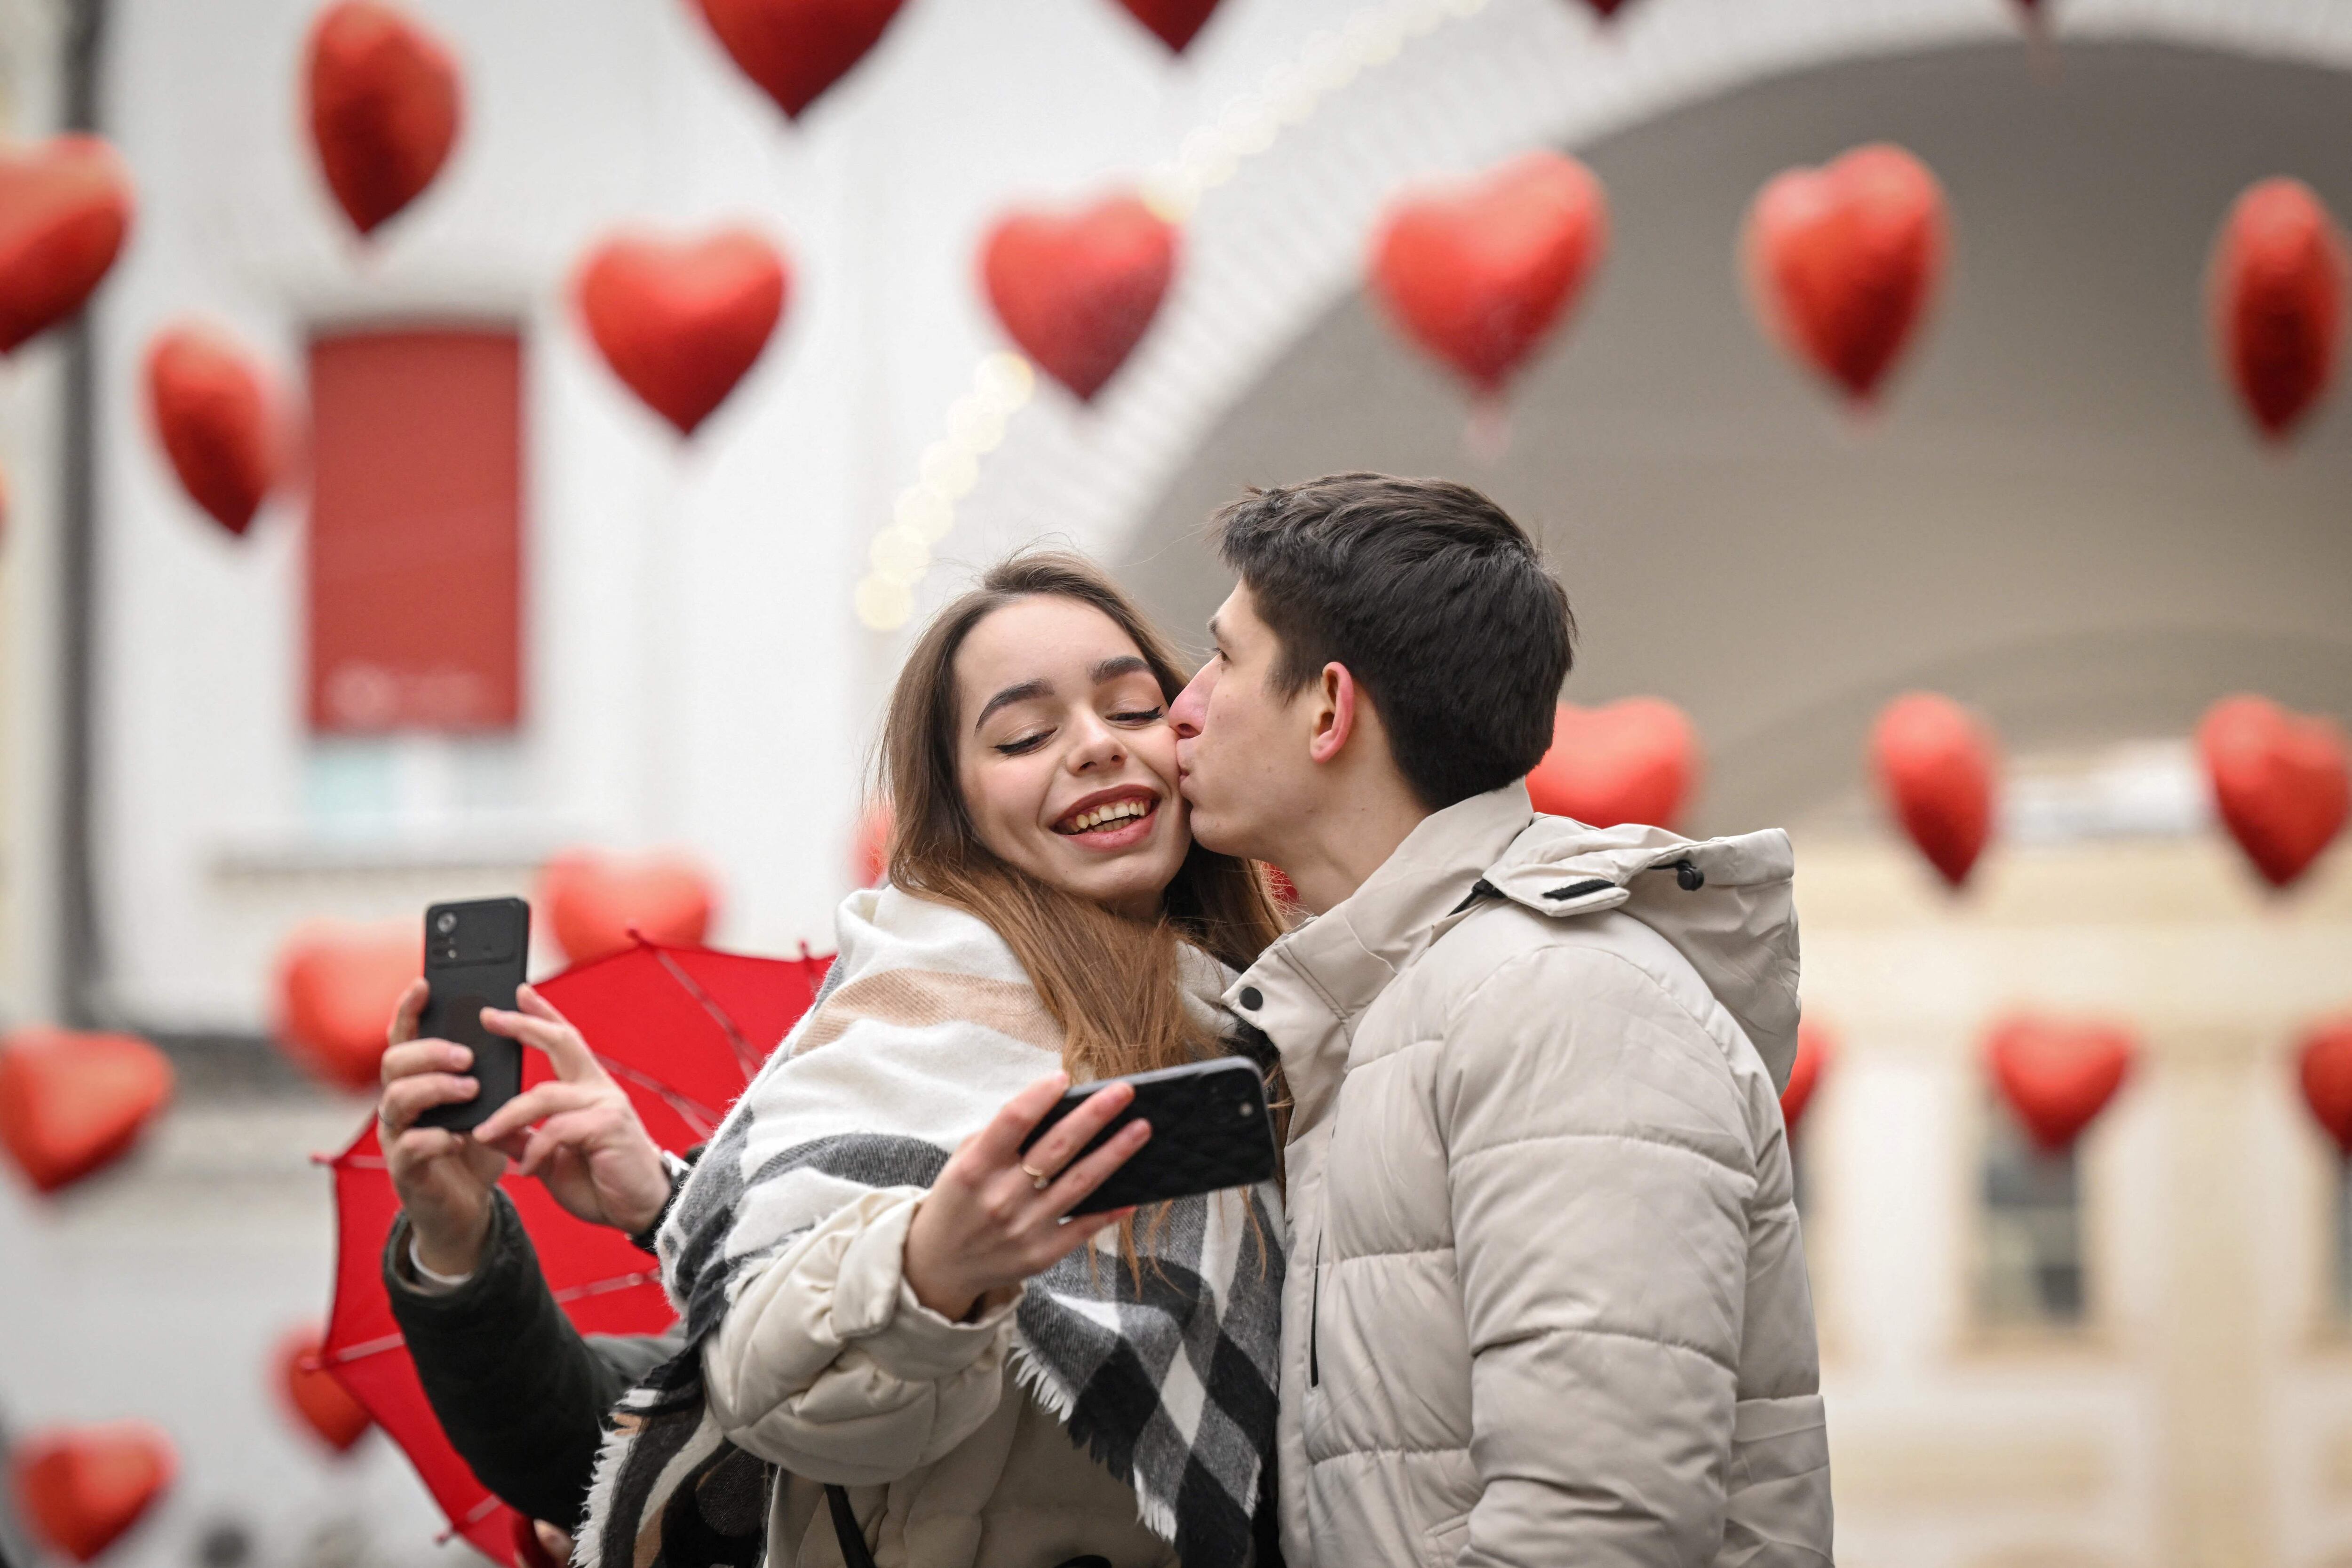 En Moscú,  en medio de globos en forma de corazones, esta pareja se toma un selfi para celebrar su amor.



